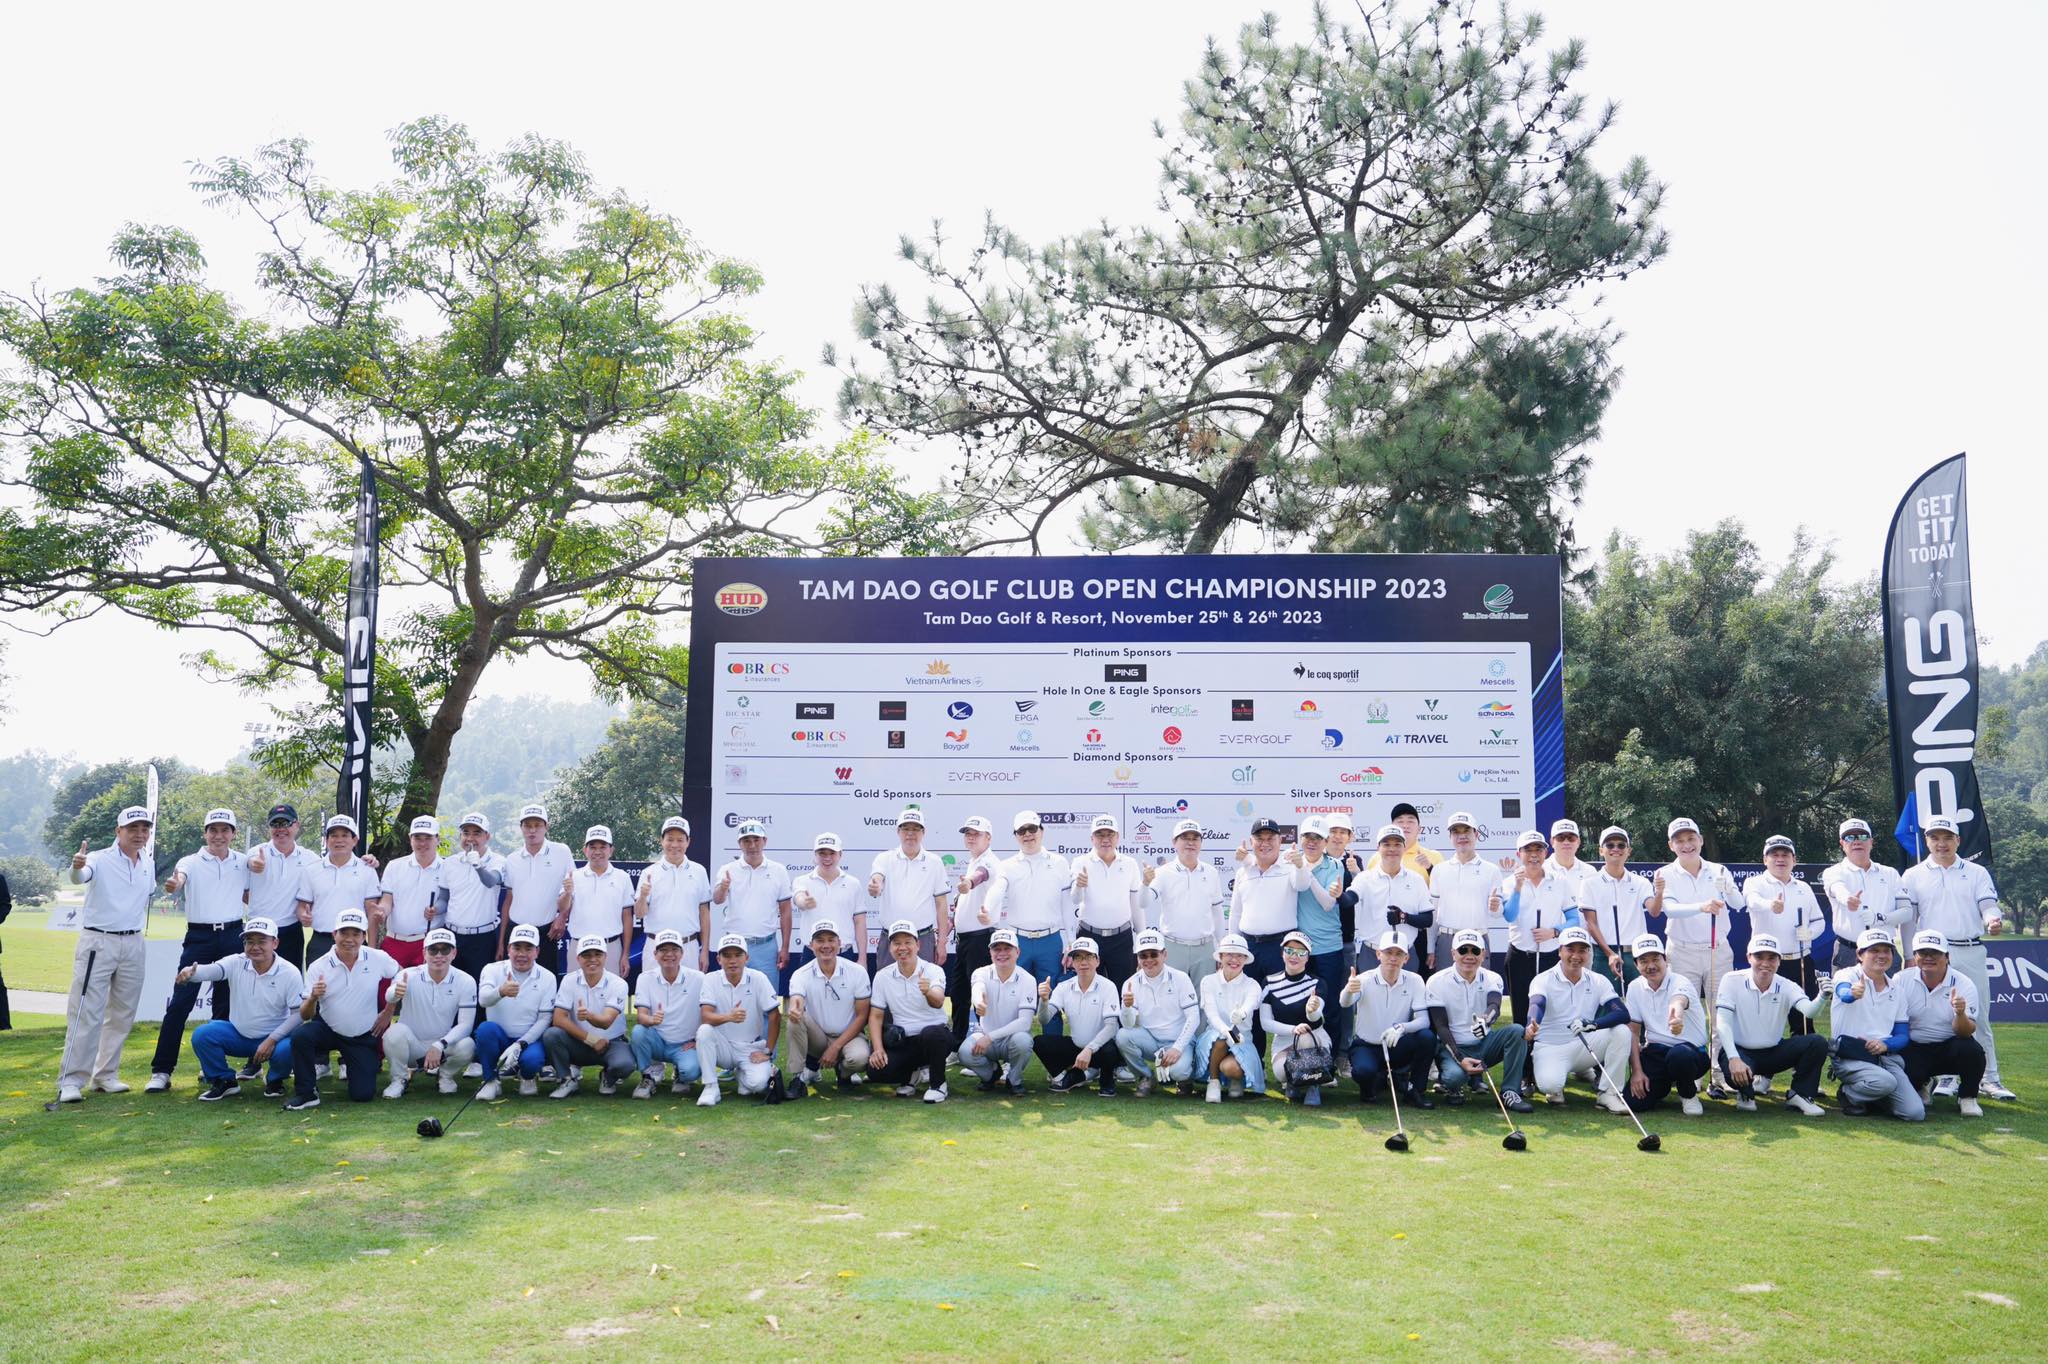 Lần đầu tiên trong lịch sử có giải HIO tại giải golf Tam Đảo Golf Club Open Championship